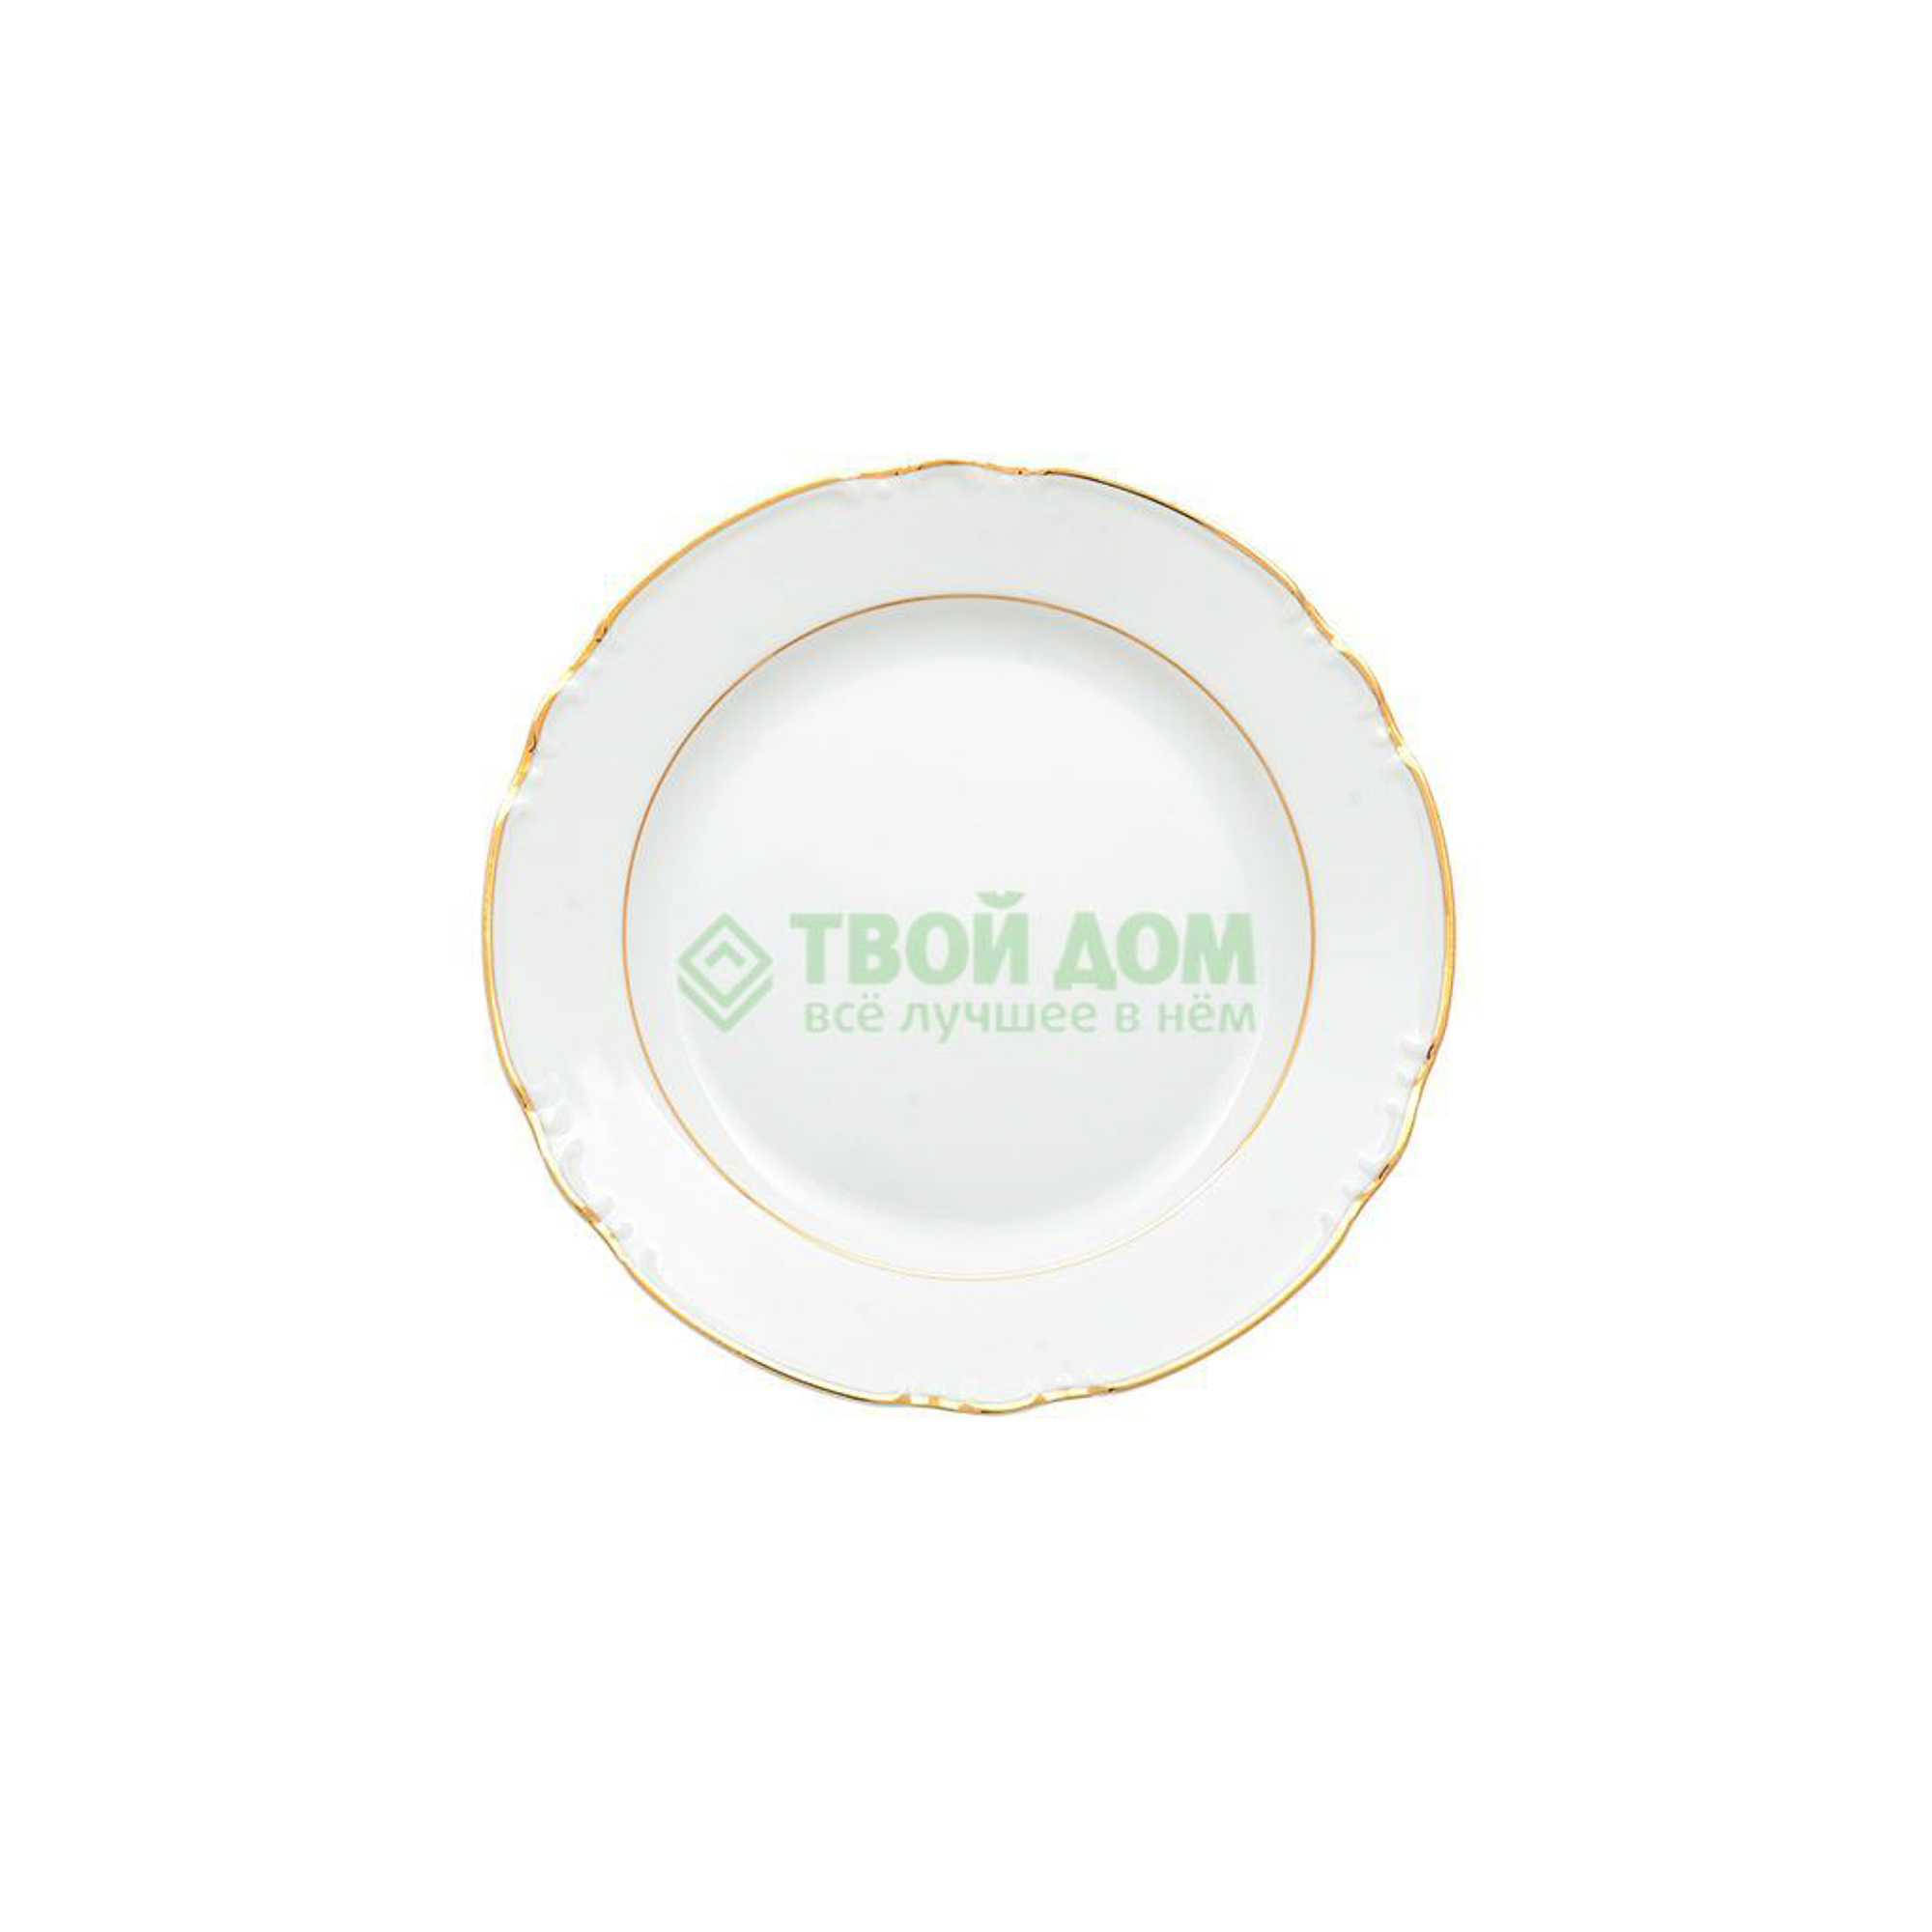 Тарелка Thun Констанция отводка золото 24 см тарелка мелкая thun констанция 24 см серебристые колосья